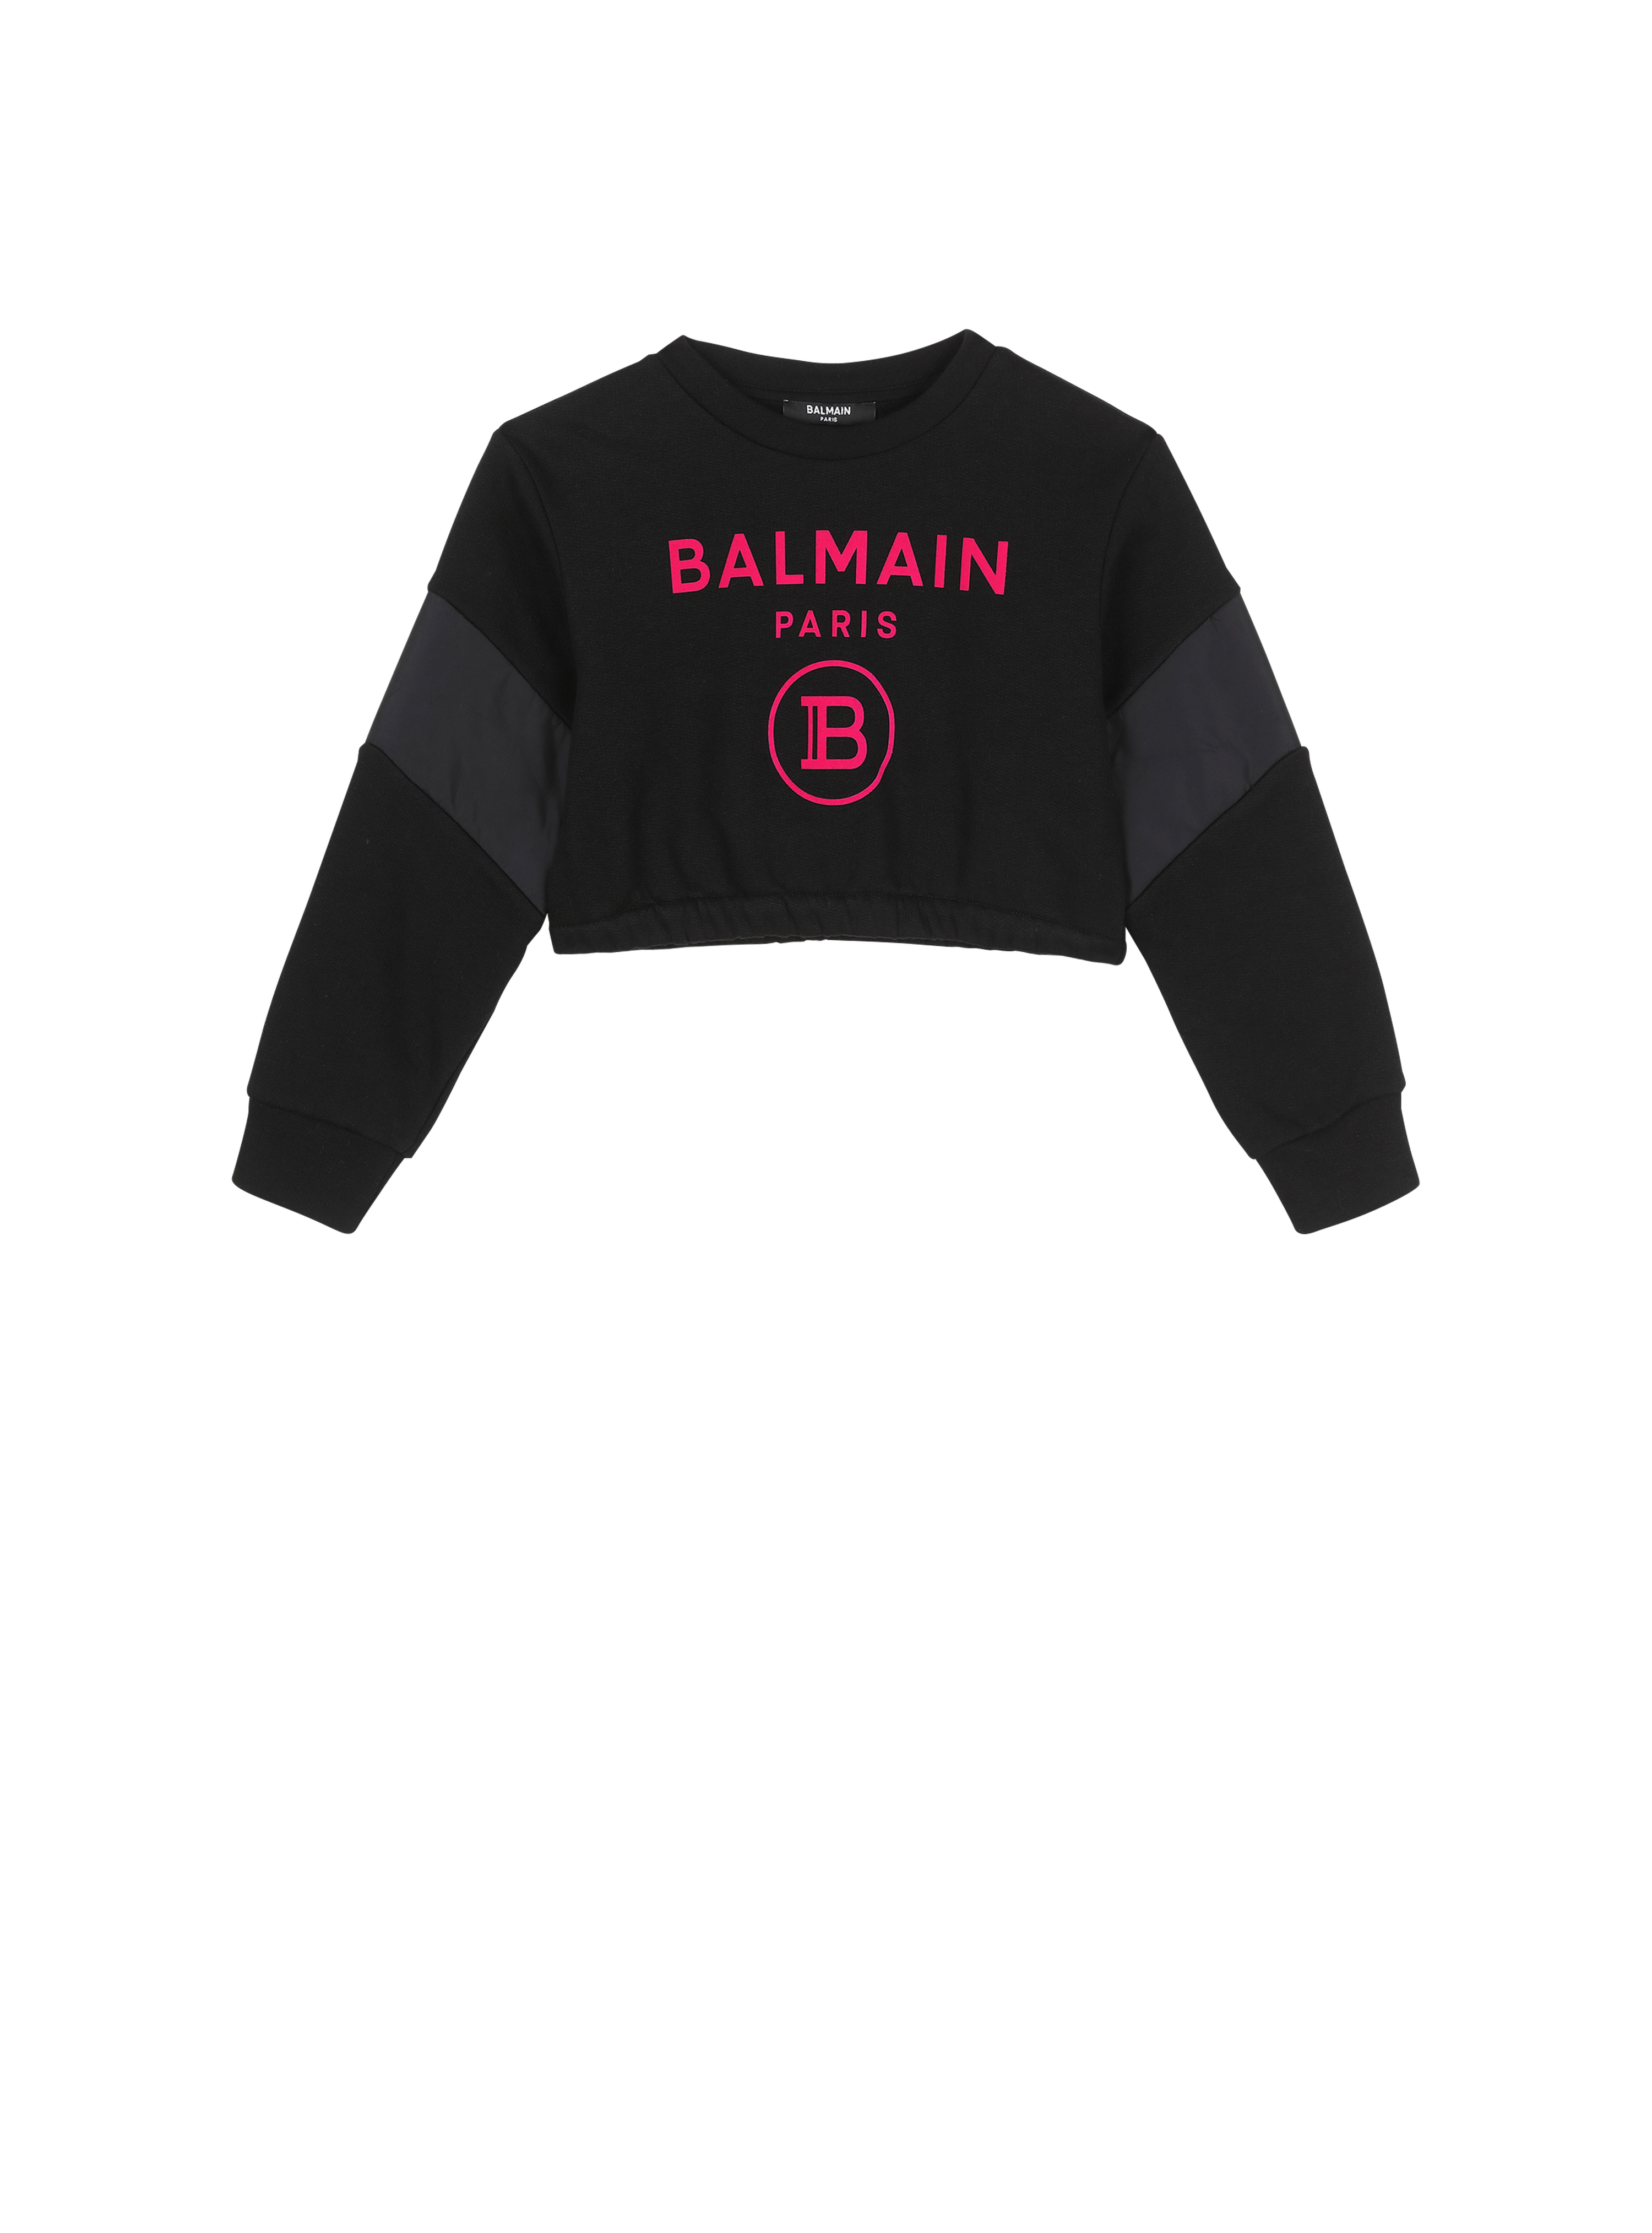 Balmain巴尔曼标志棉质短毛衫, black